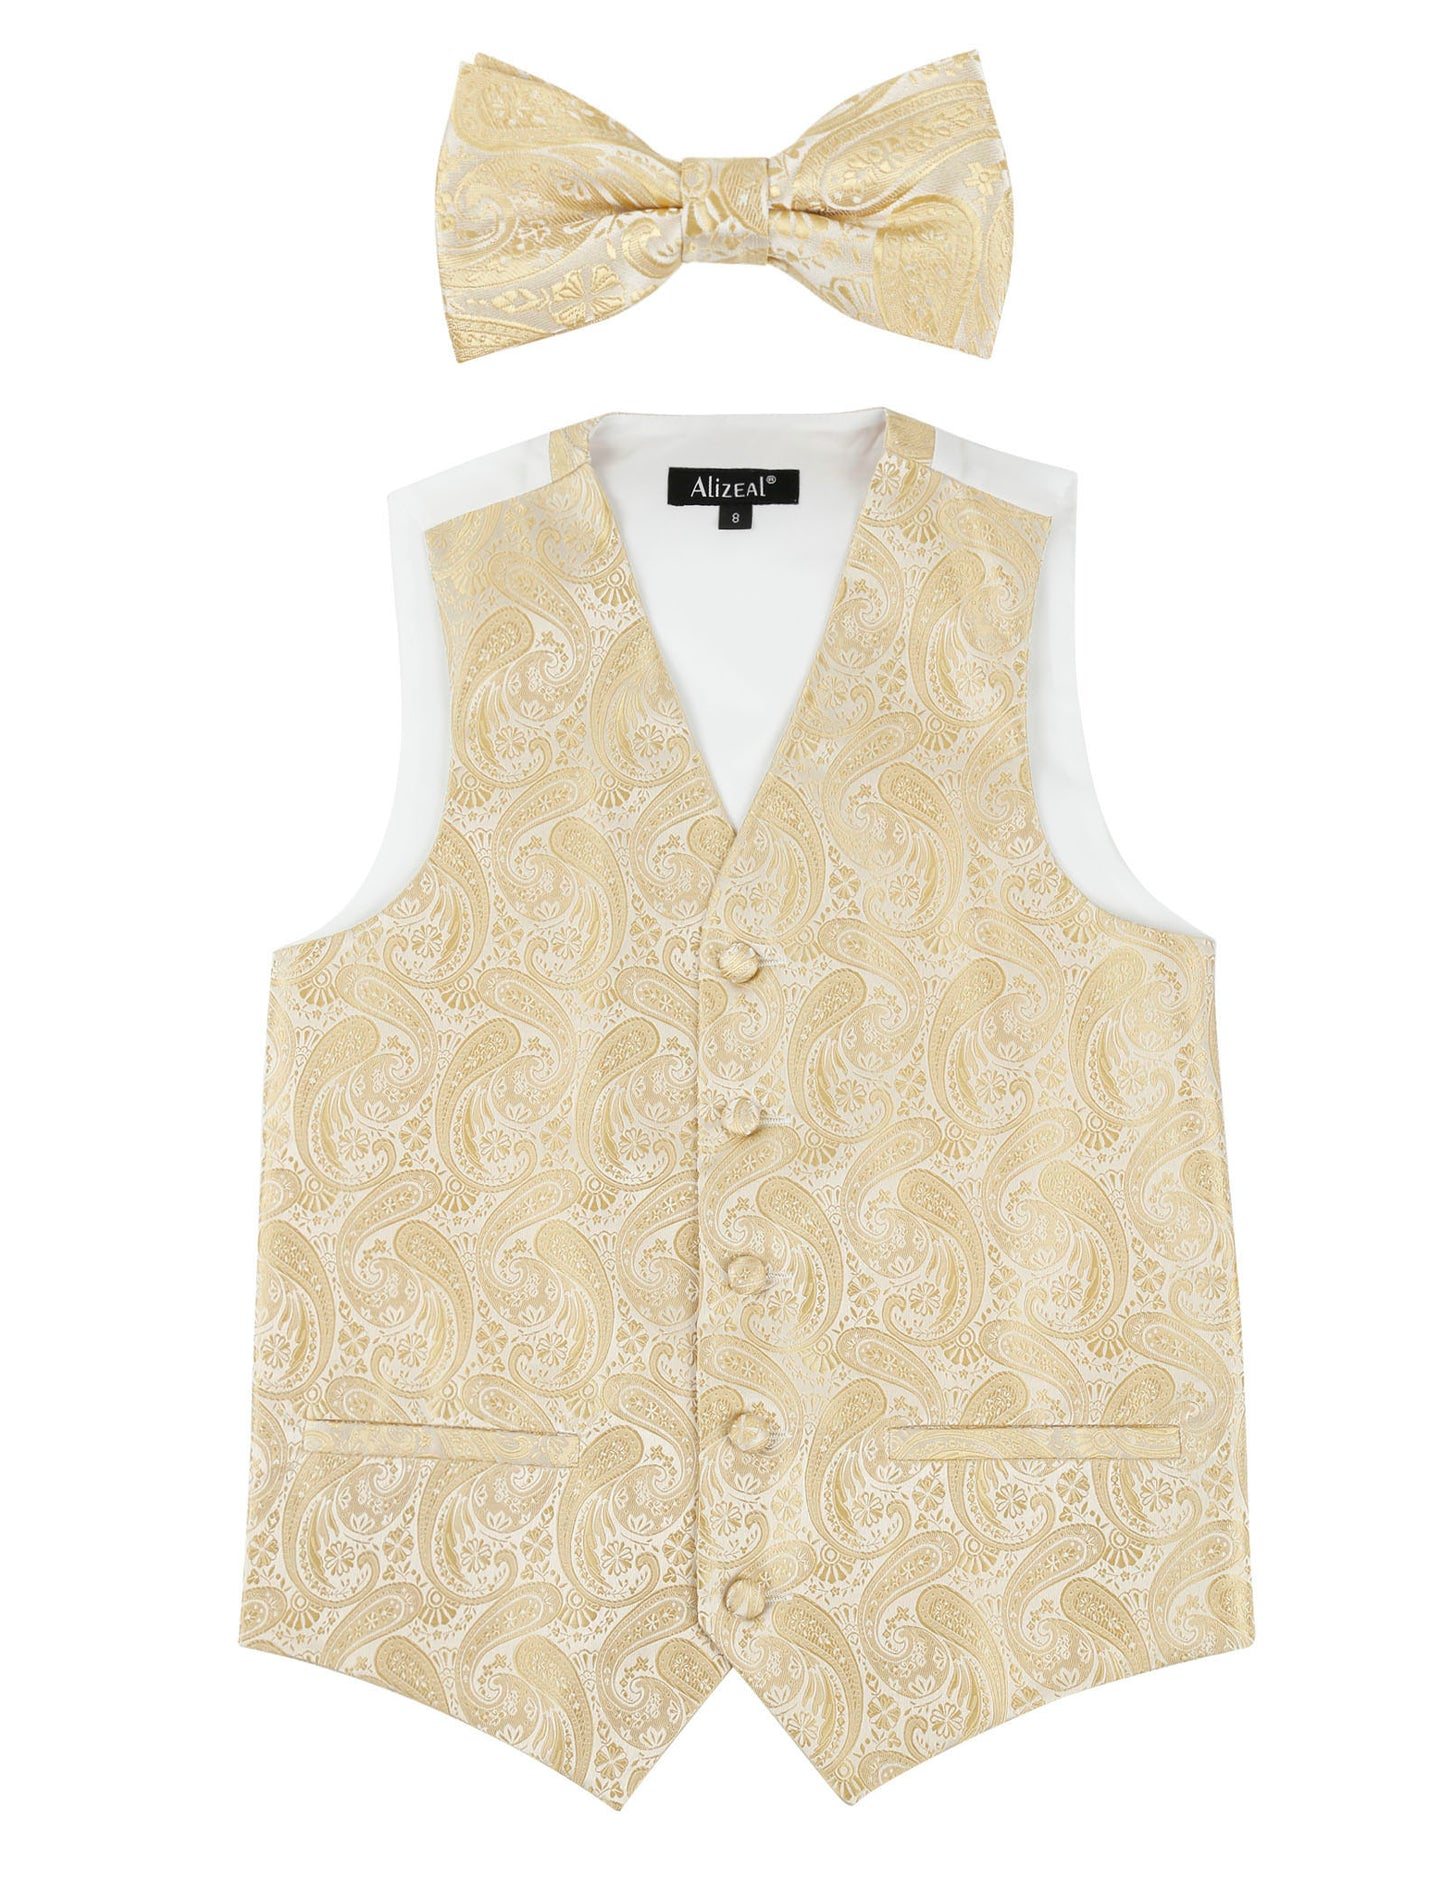 Boy's Paisley Jacquard Pre-Tied Bow Tie with Classic Floral Dress Suit Vest Set, 077-Champagne